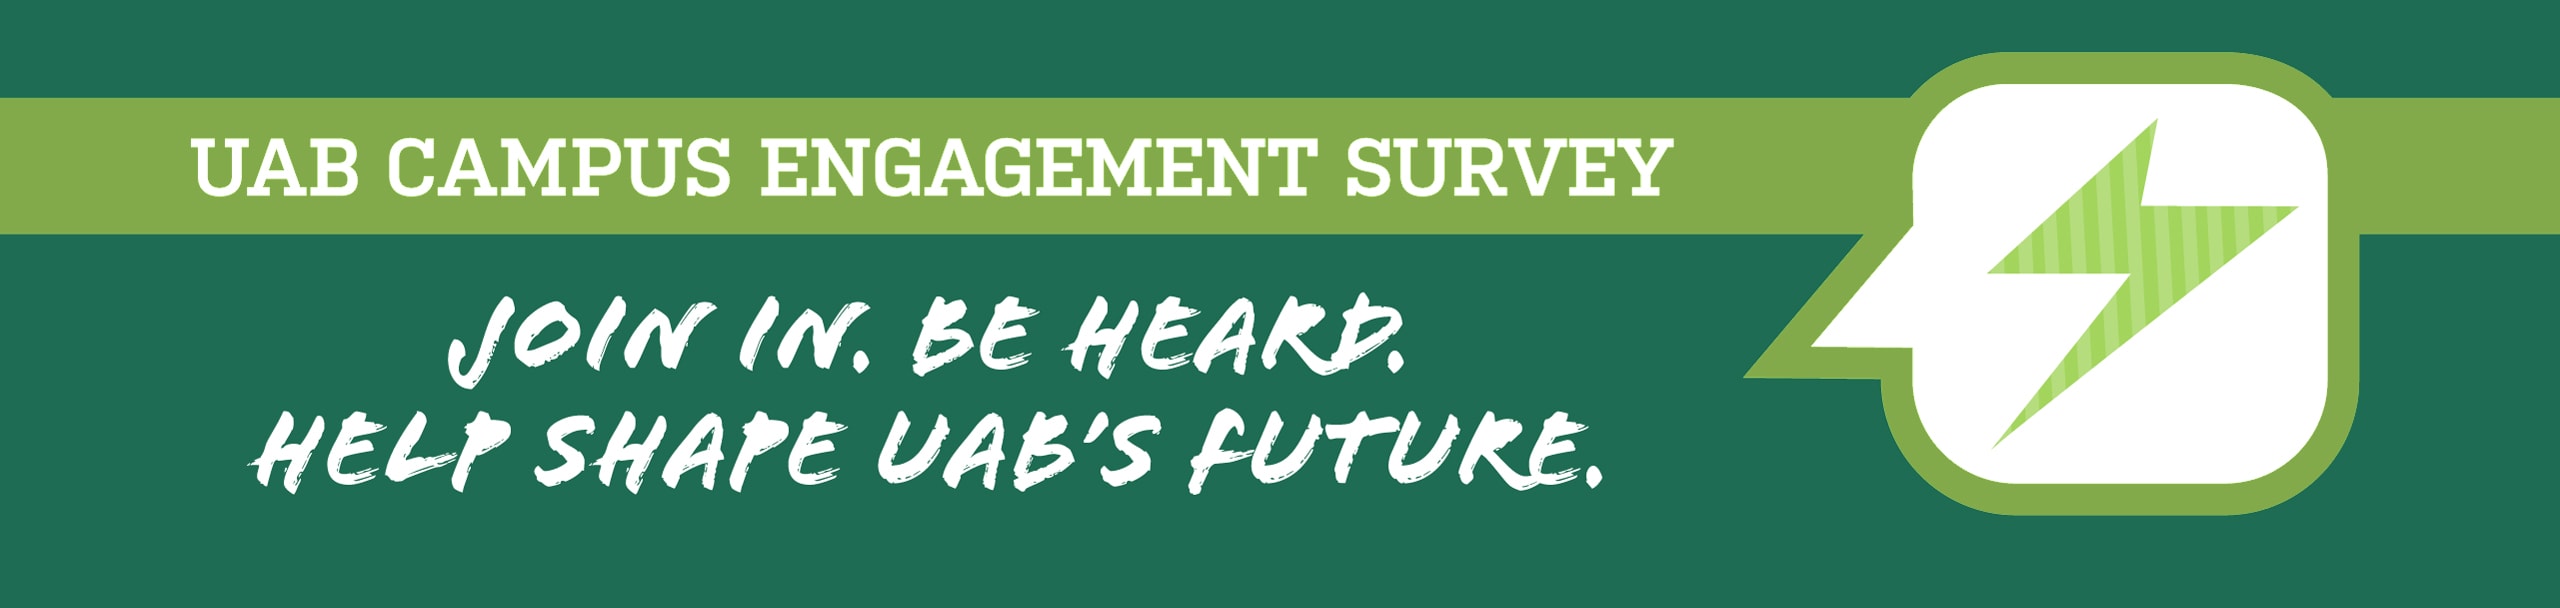 2017 campus engagement survey banner